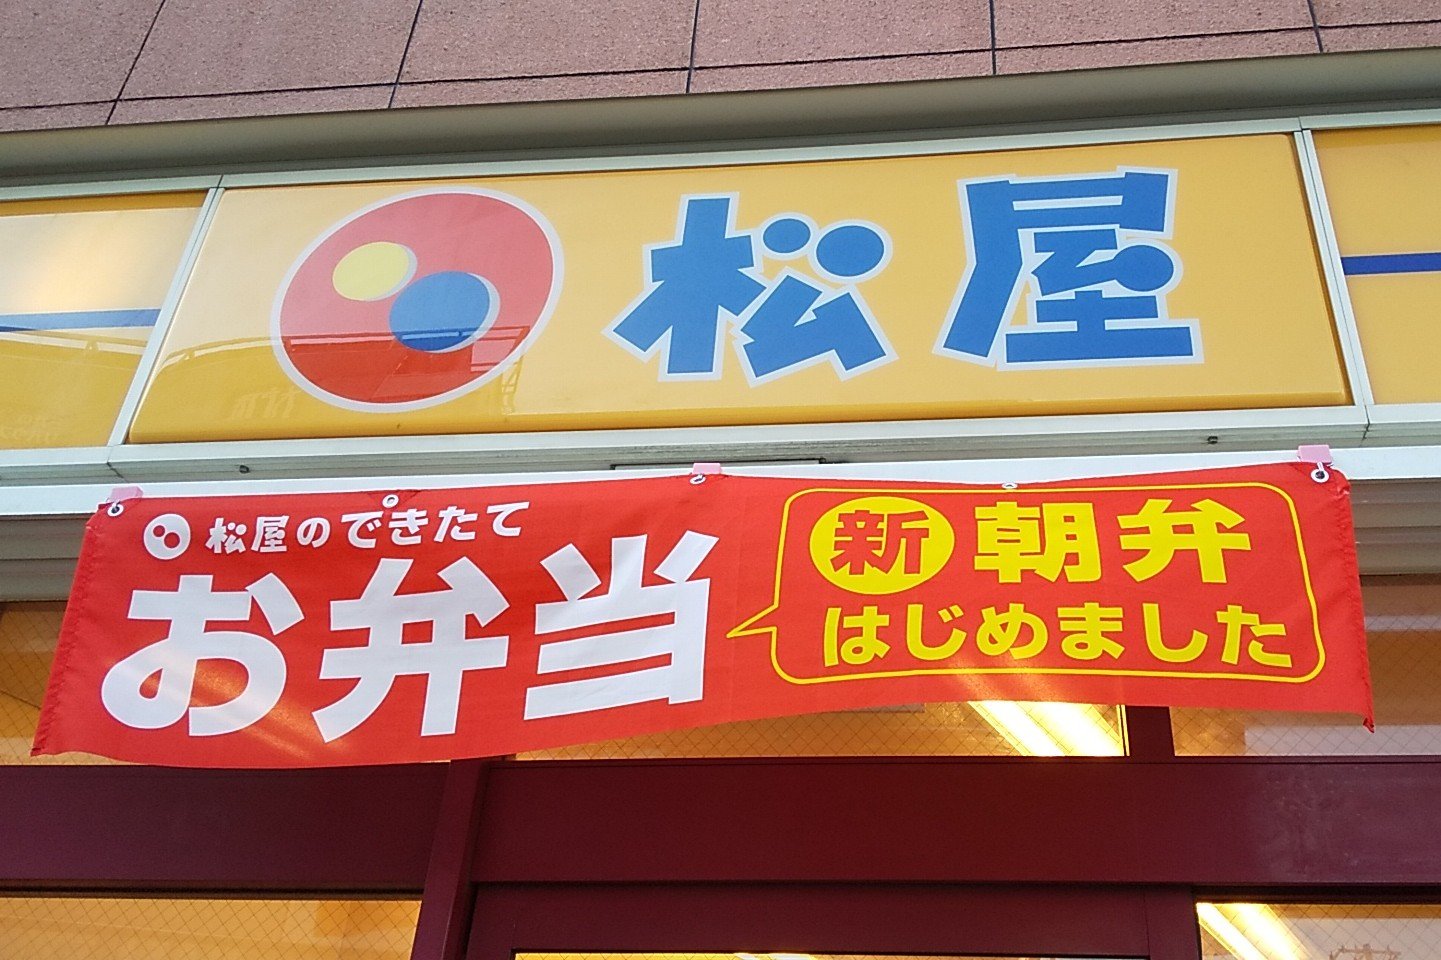 注目集まる【松屋】「朝弁当」みそ汁付き300円台。忙しい朝の味方に